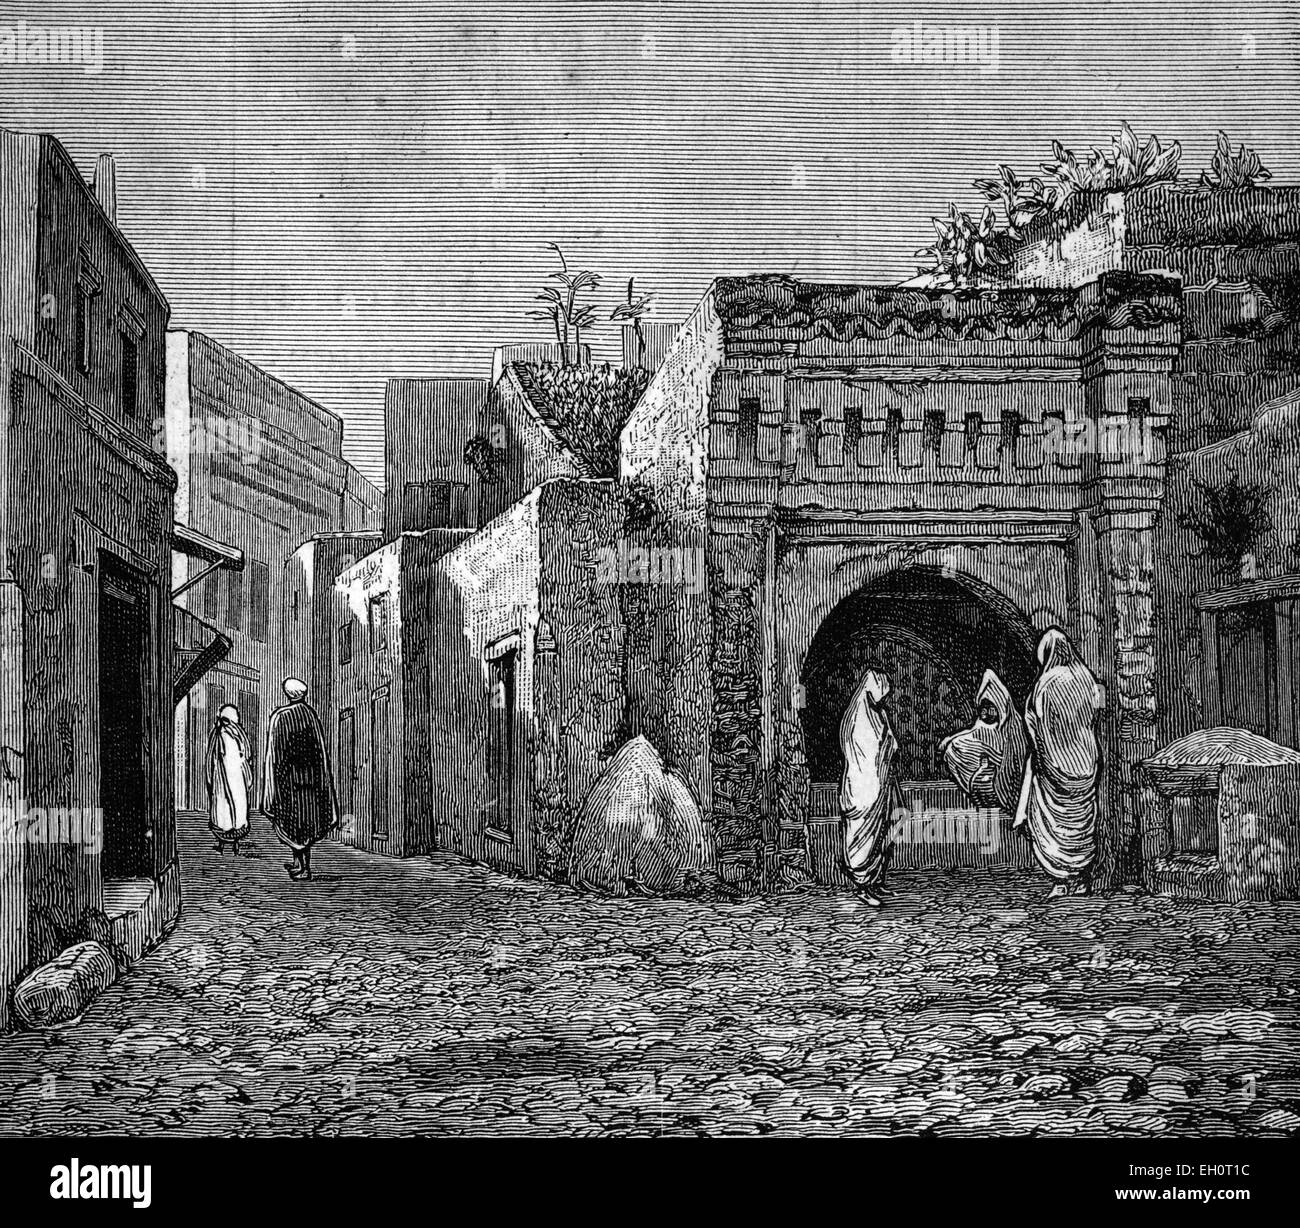 Une cour à Tanger, Maroc, image historique, 1883 Banque D'Images